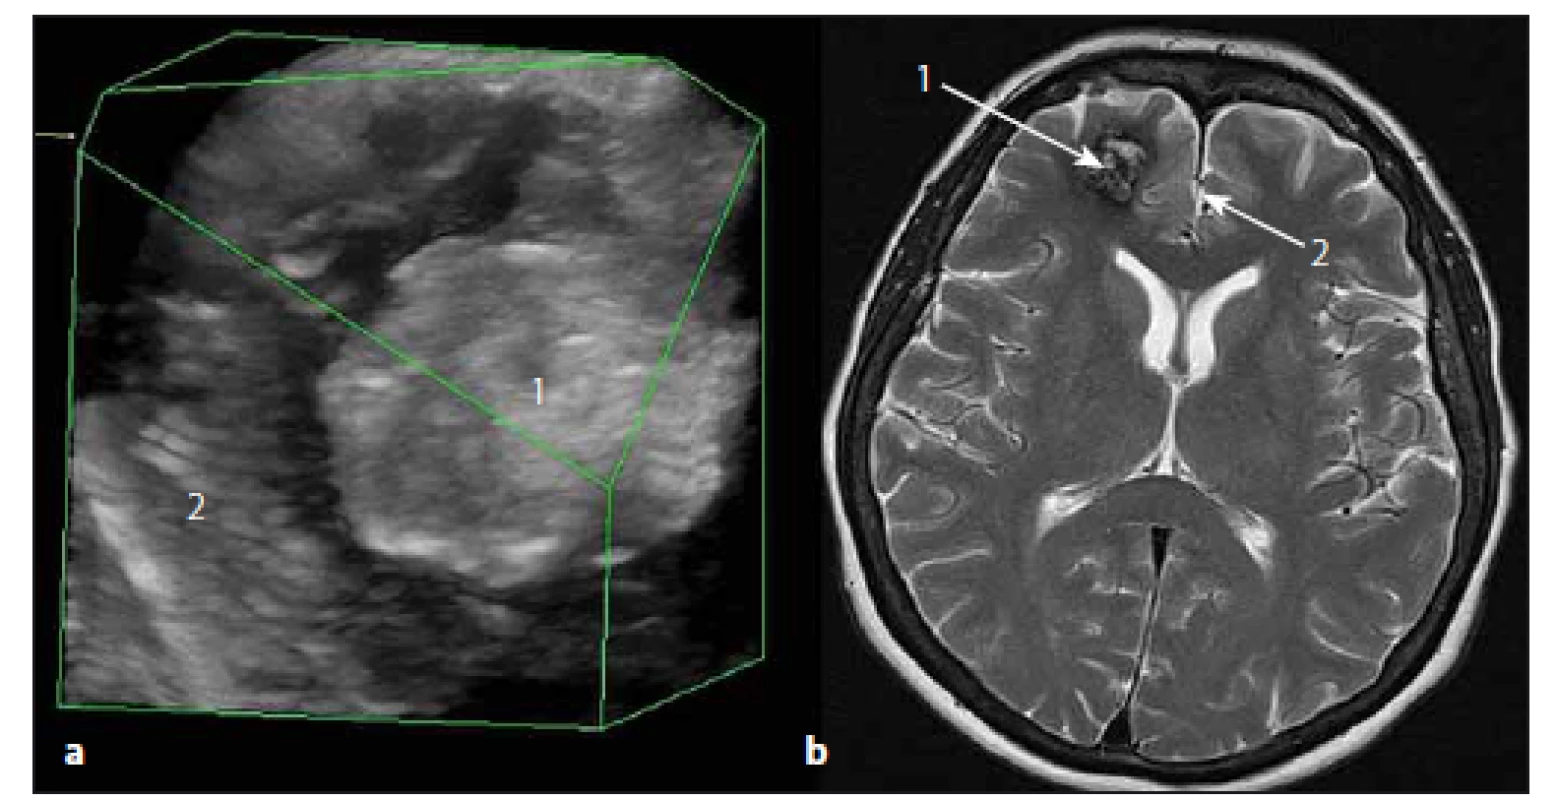 Sonografický 3D obraz kavernomu čelního laloku vpravo.
Fig. 5. The ultrasound 3D image of right frontal lobe cavernoma.